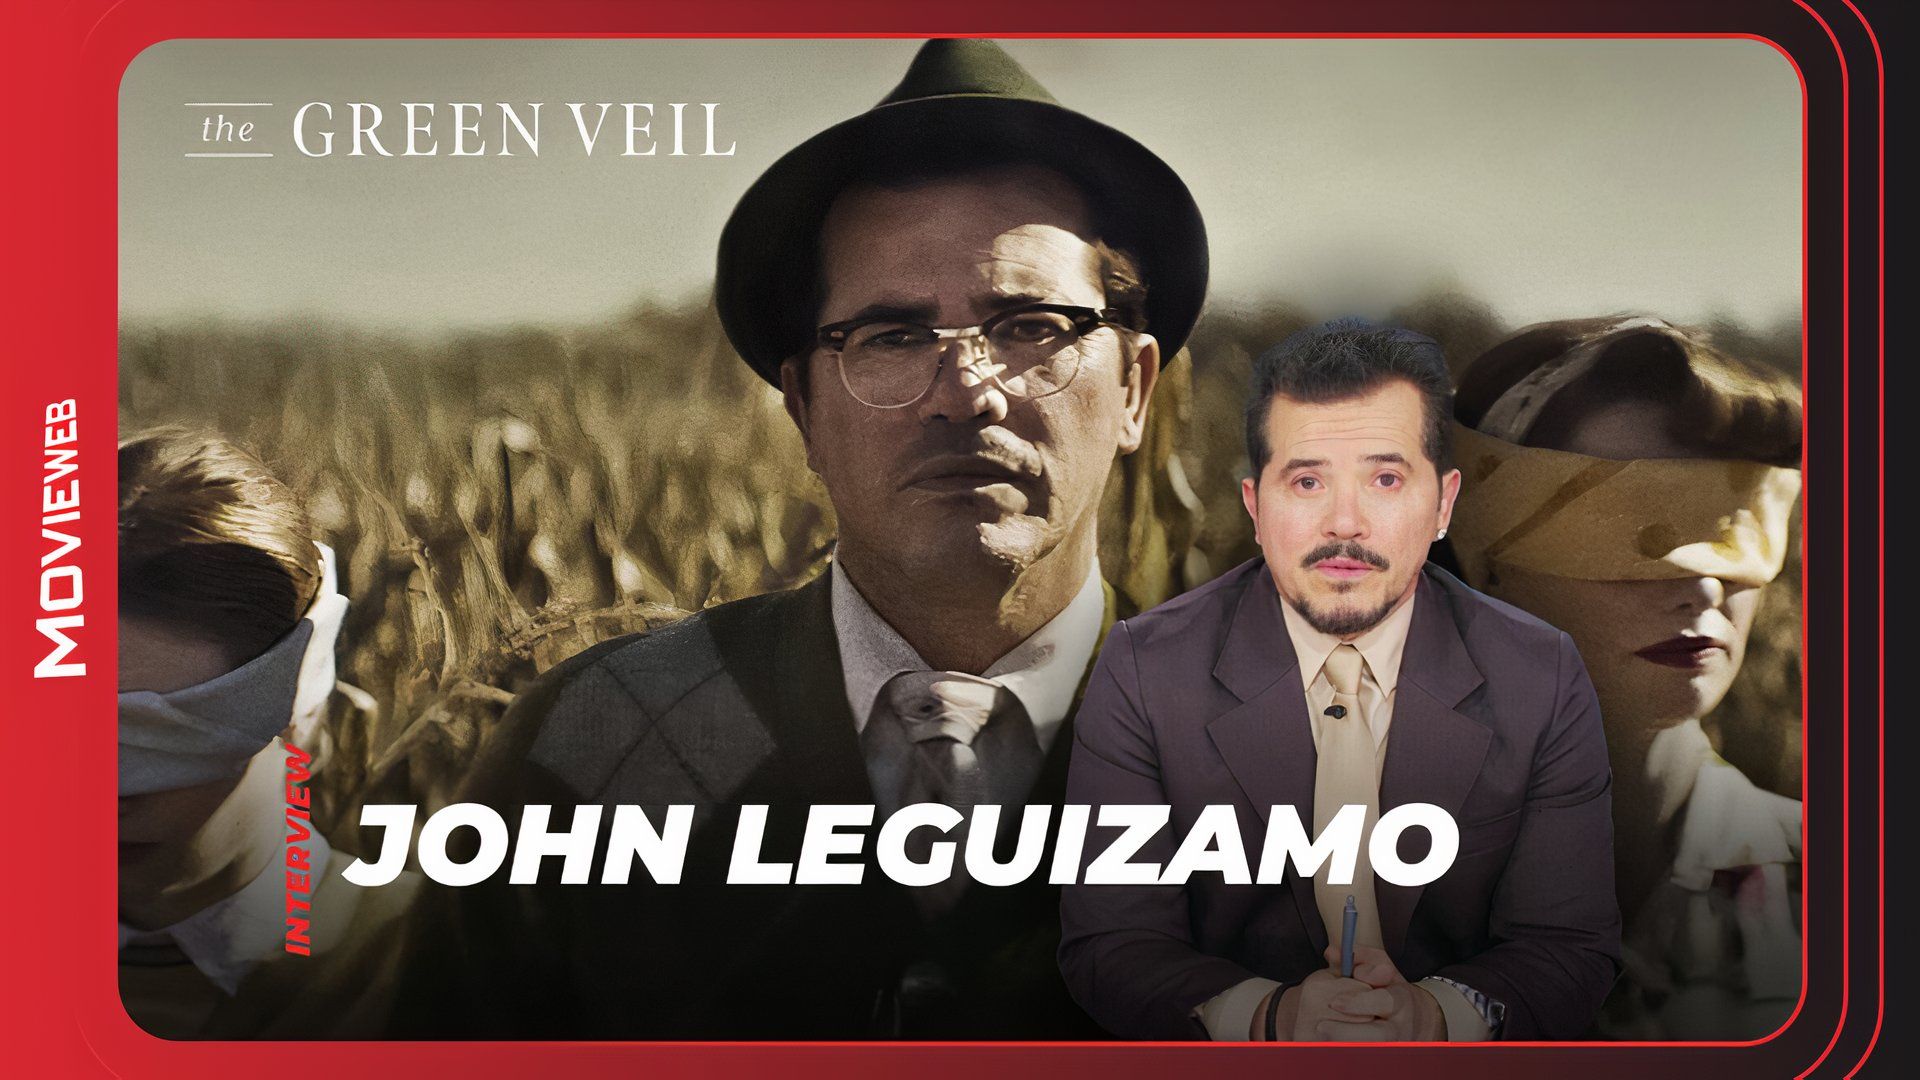 The Green Veil - John Leguizamo Interview